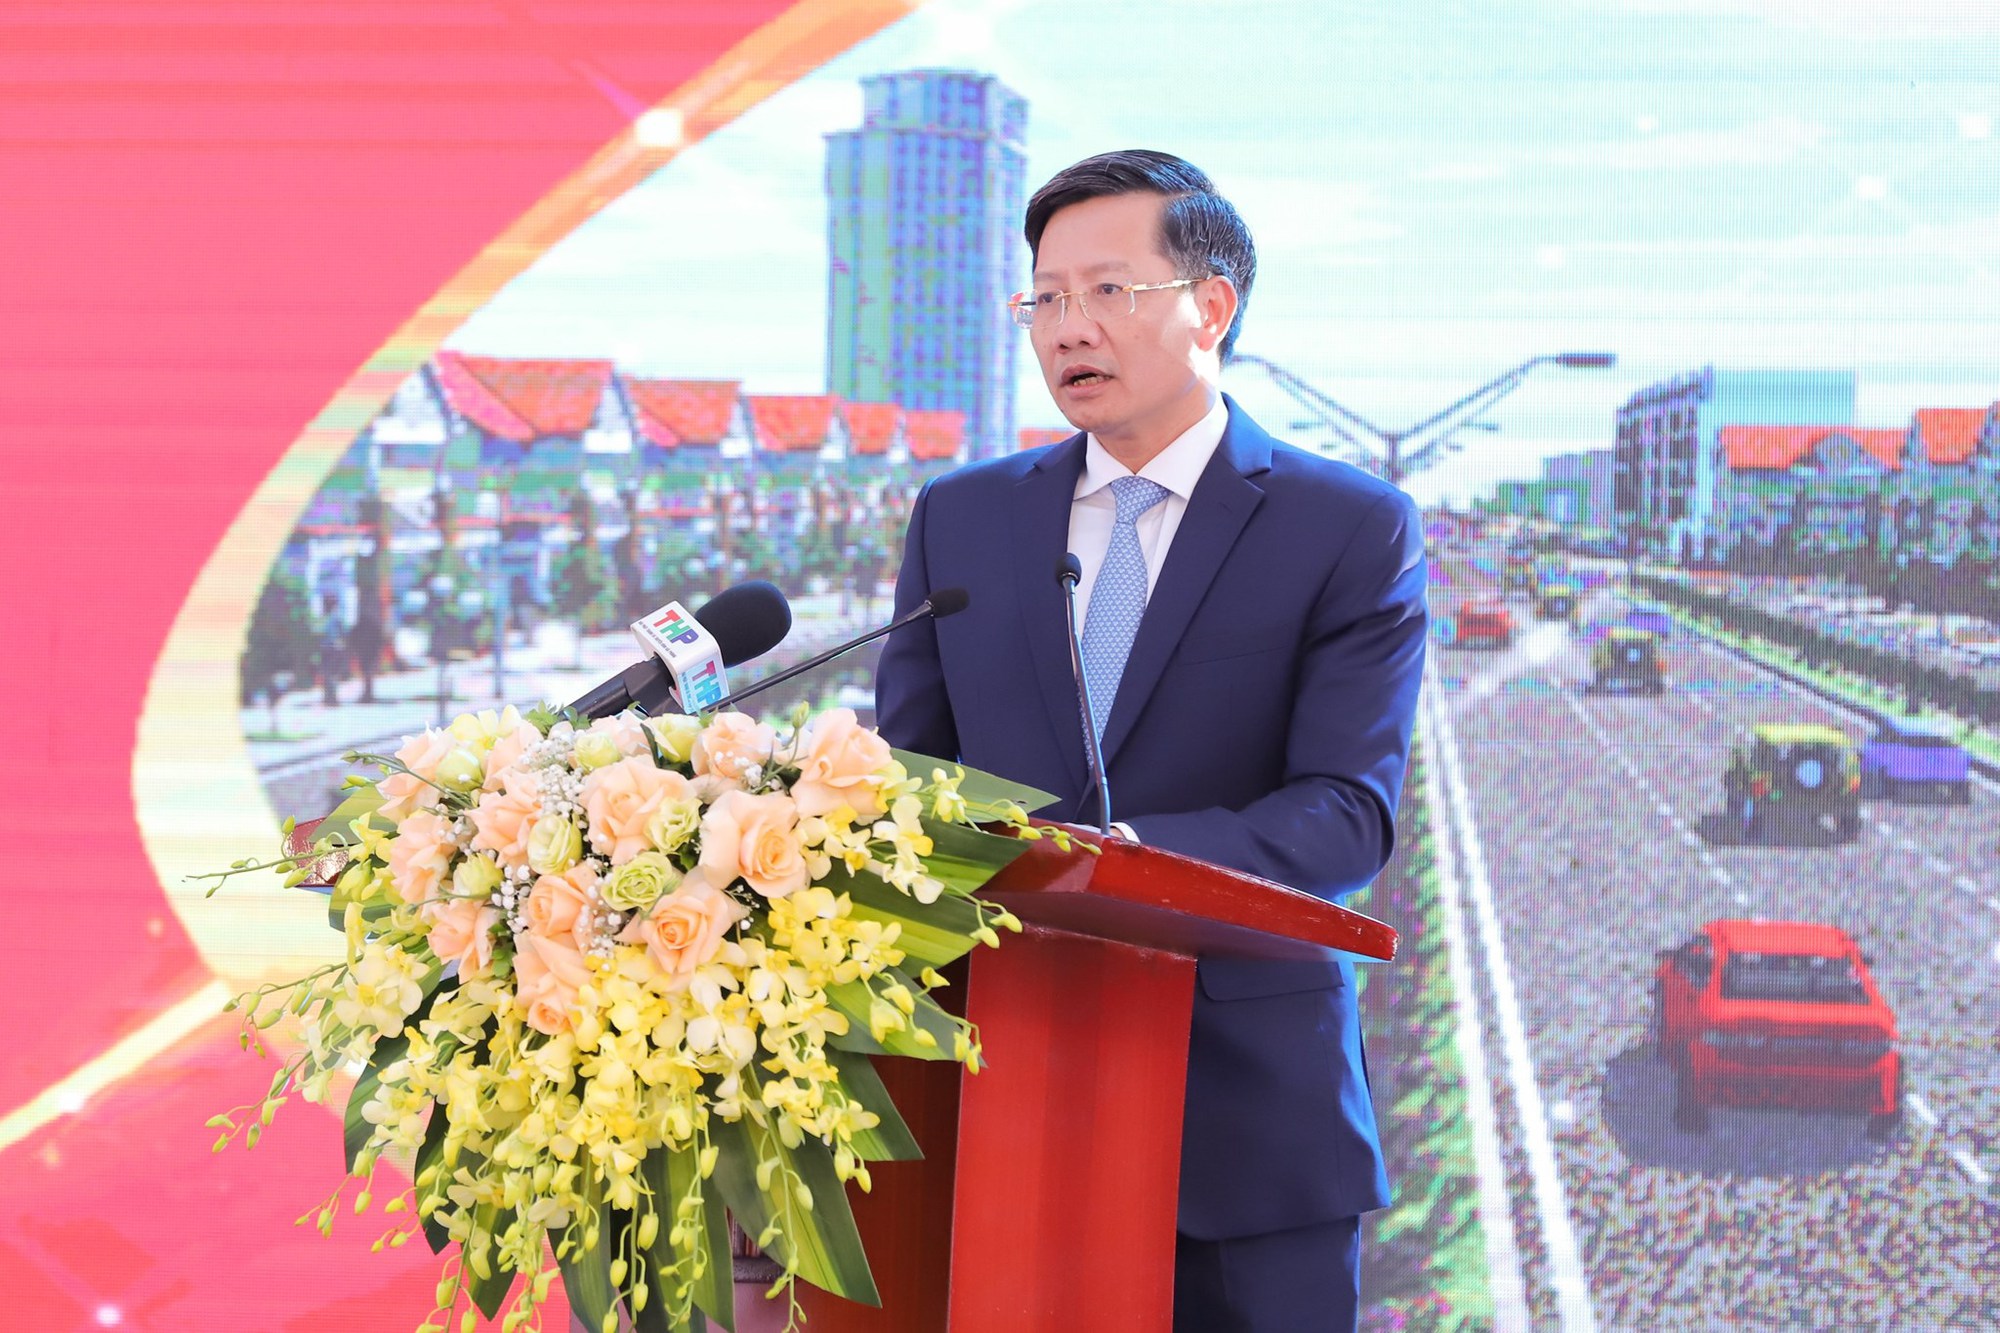 Khai xuân, Hải Phòng làm lễ khởi công xây dựng tuyến đường nối khu đô thị mới Bắc Sông Cấm với KCN VSIP - Ảnh 2.